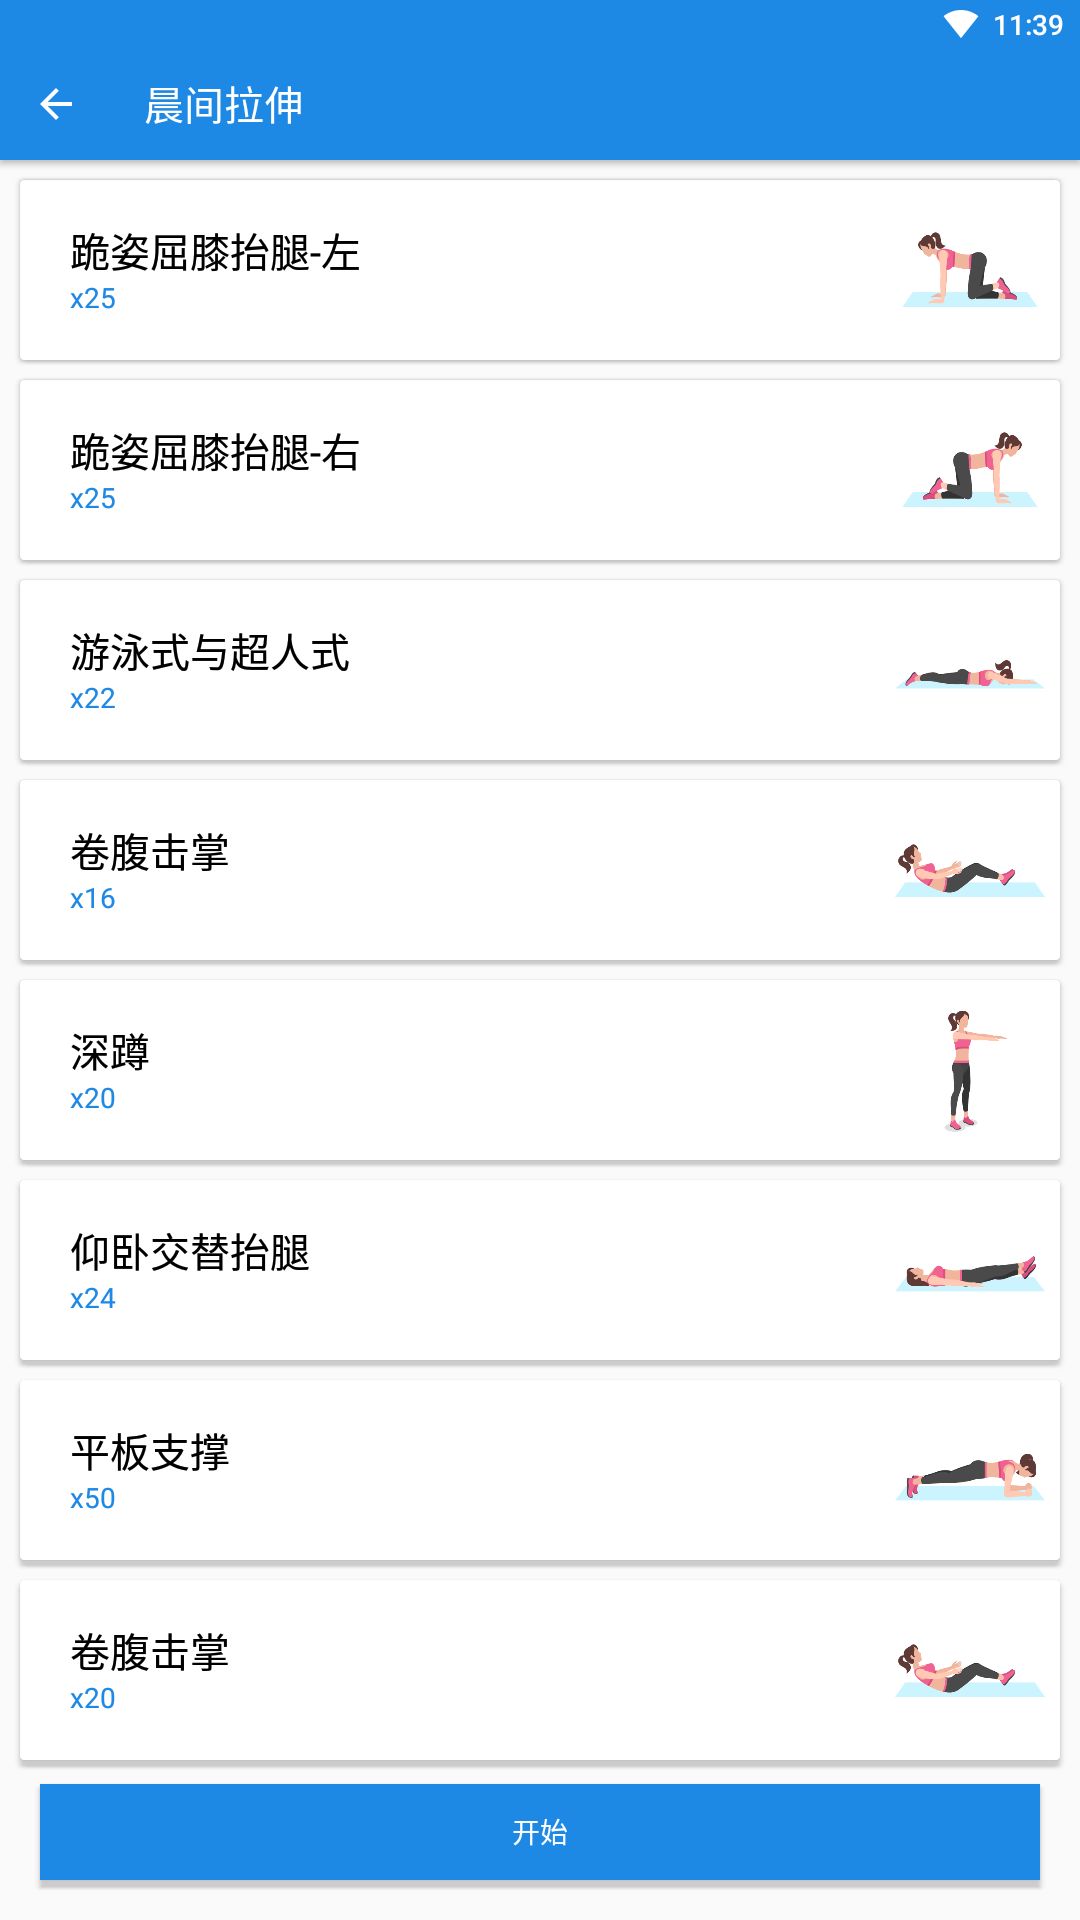 凯越瑜伽体育健身app图3